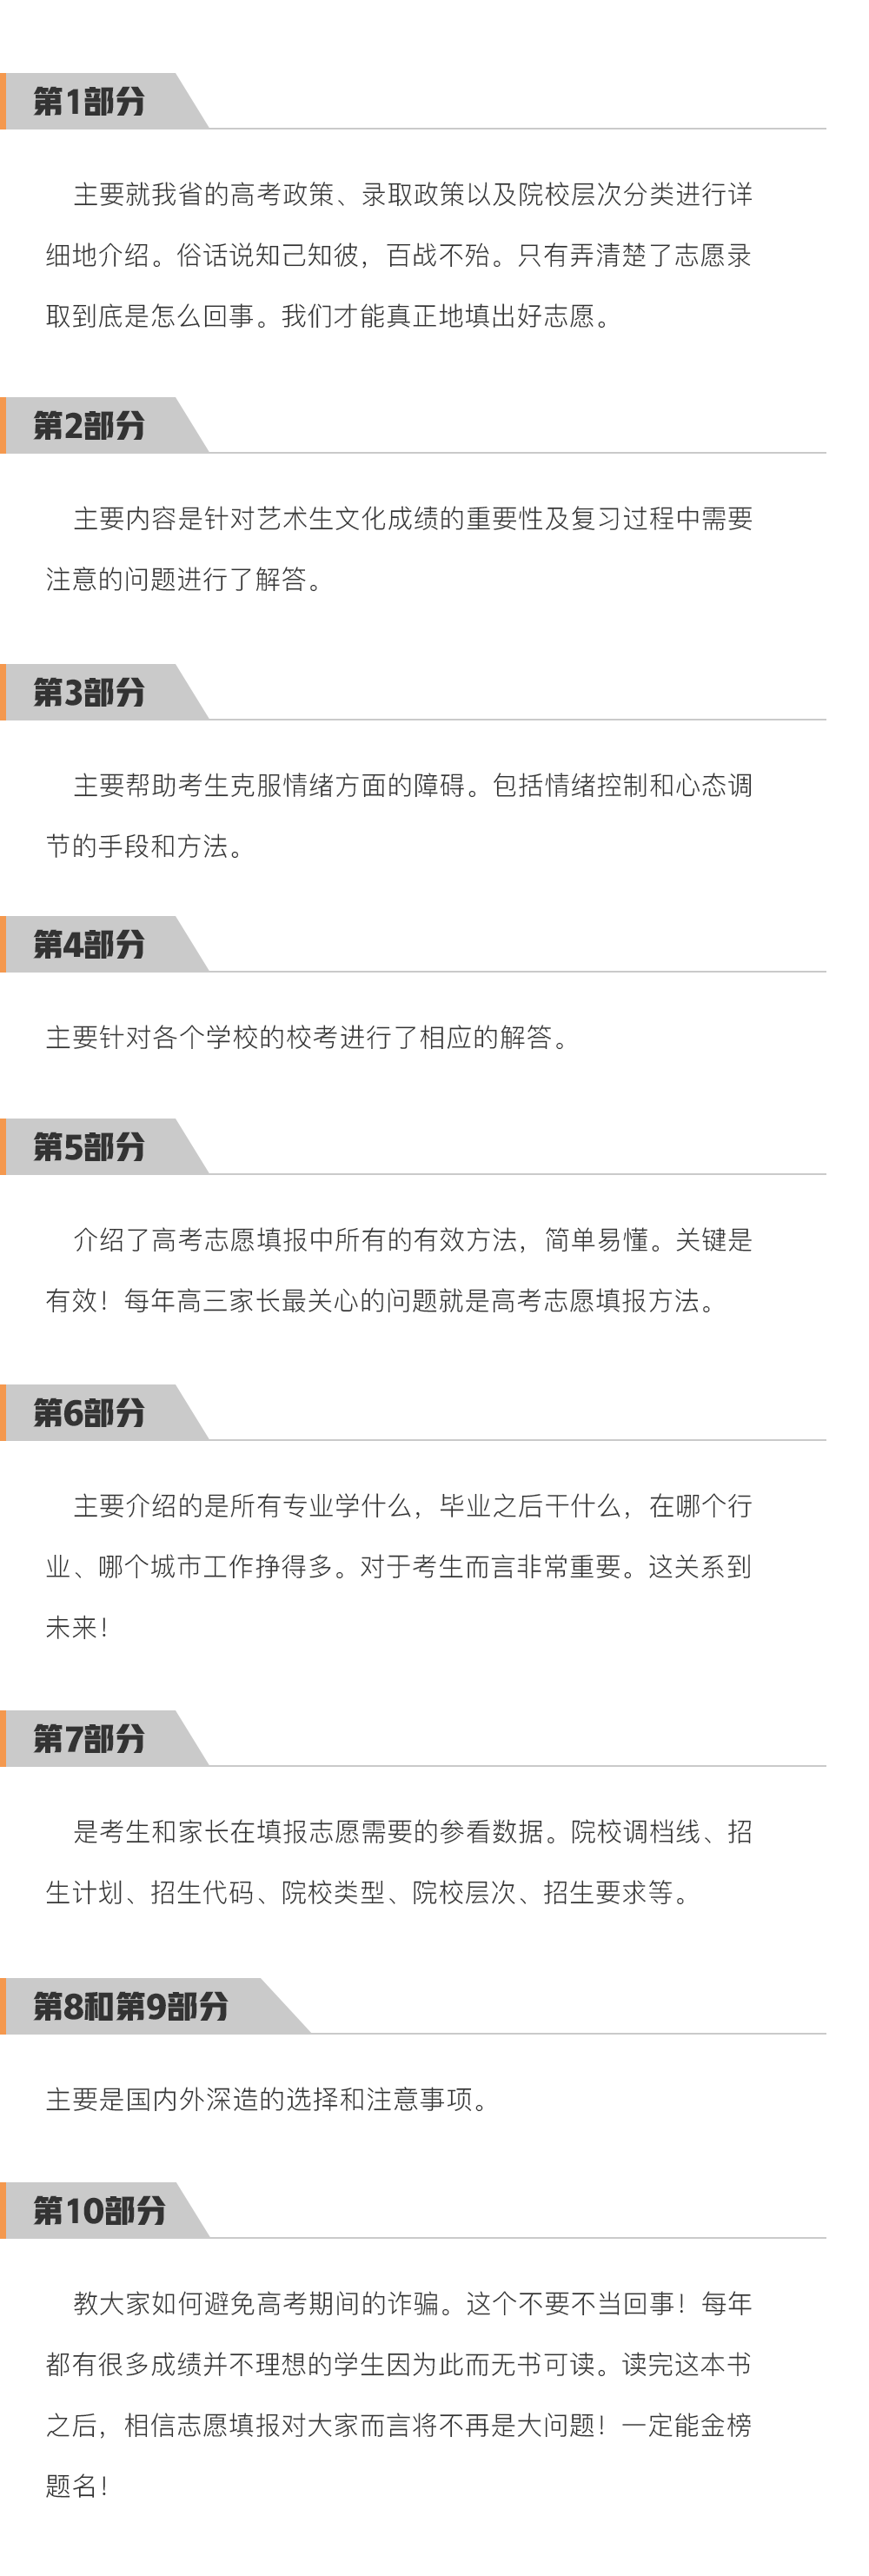 四川志愿填报指南5.png